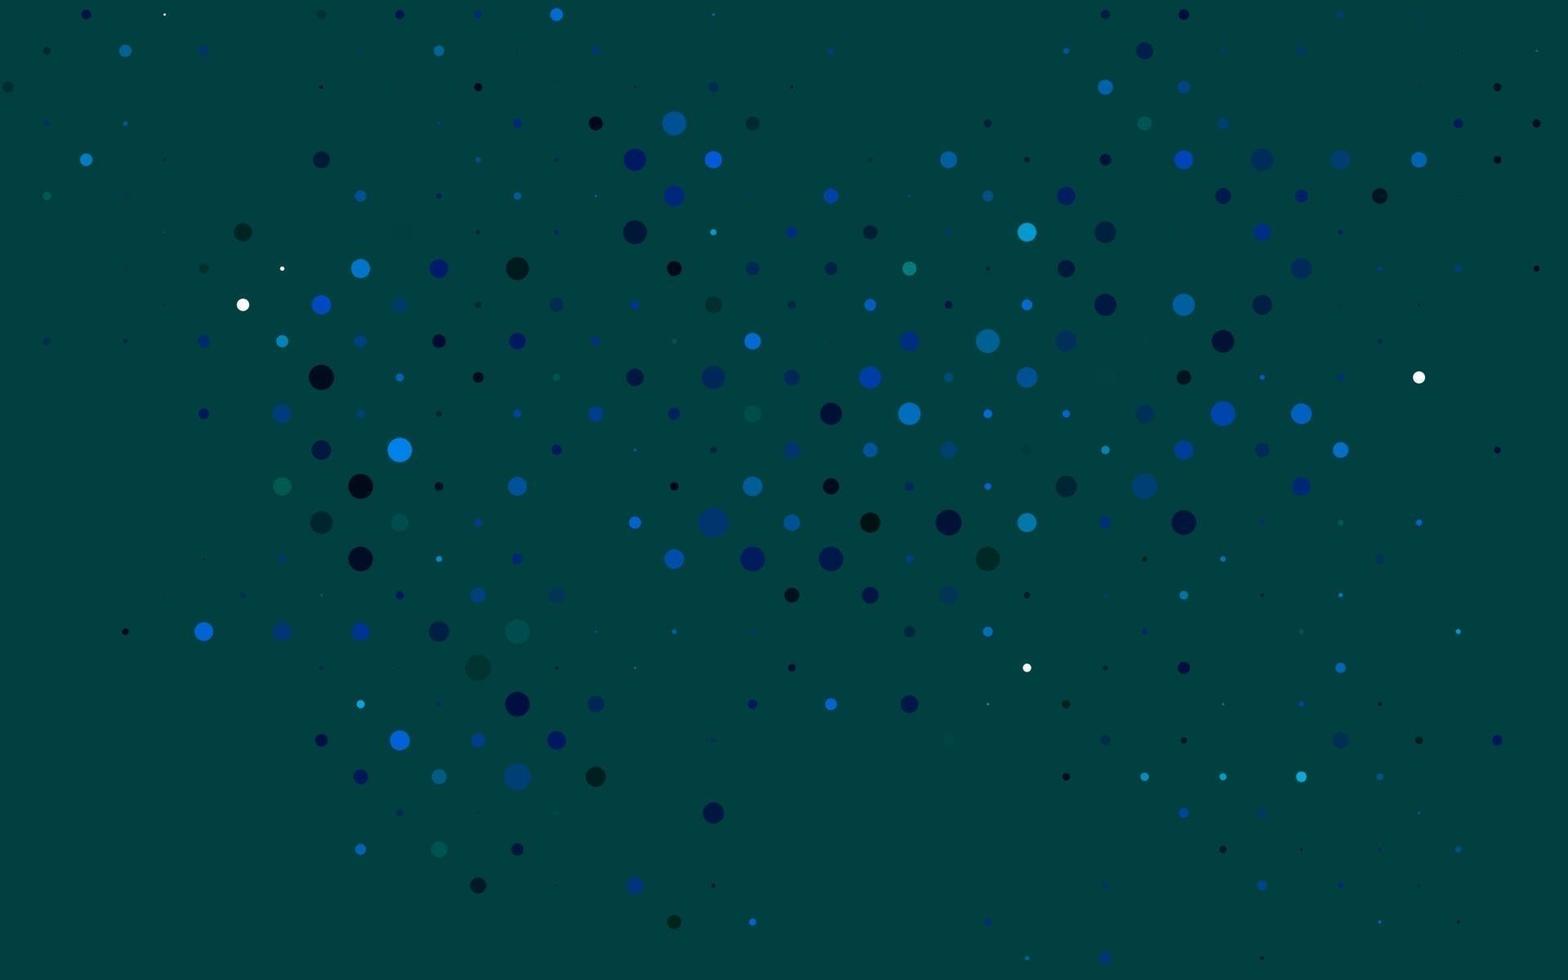 lichtblauwe, groene vectortextuur met schijven. vector